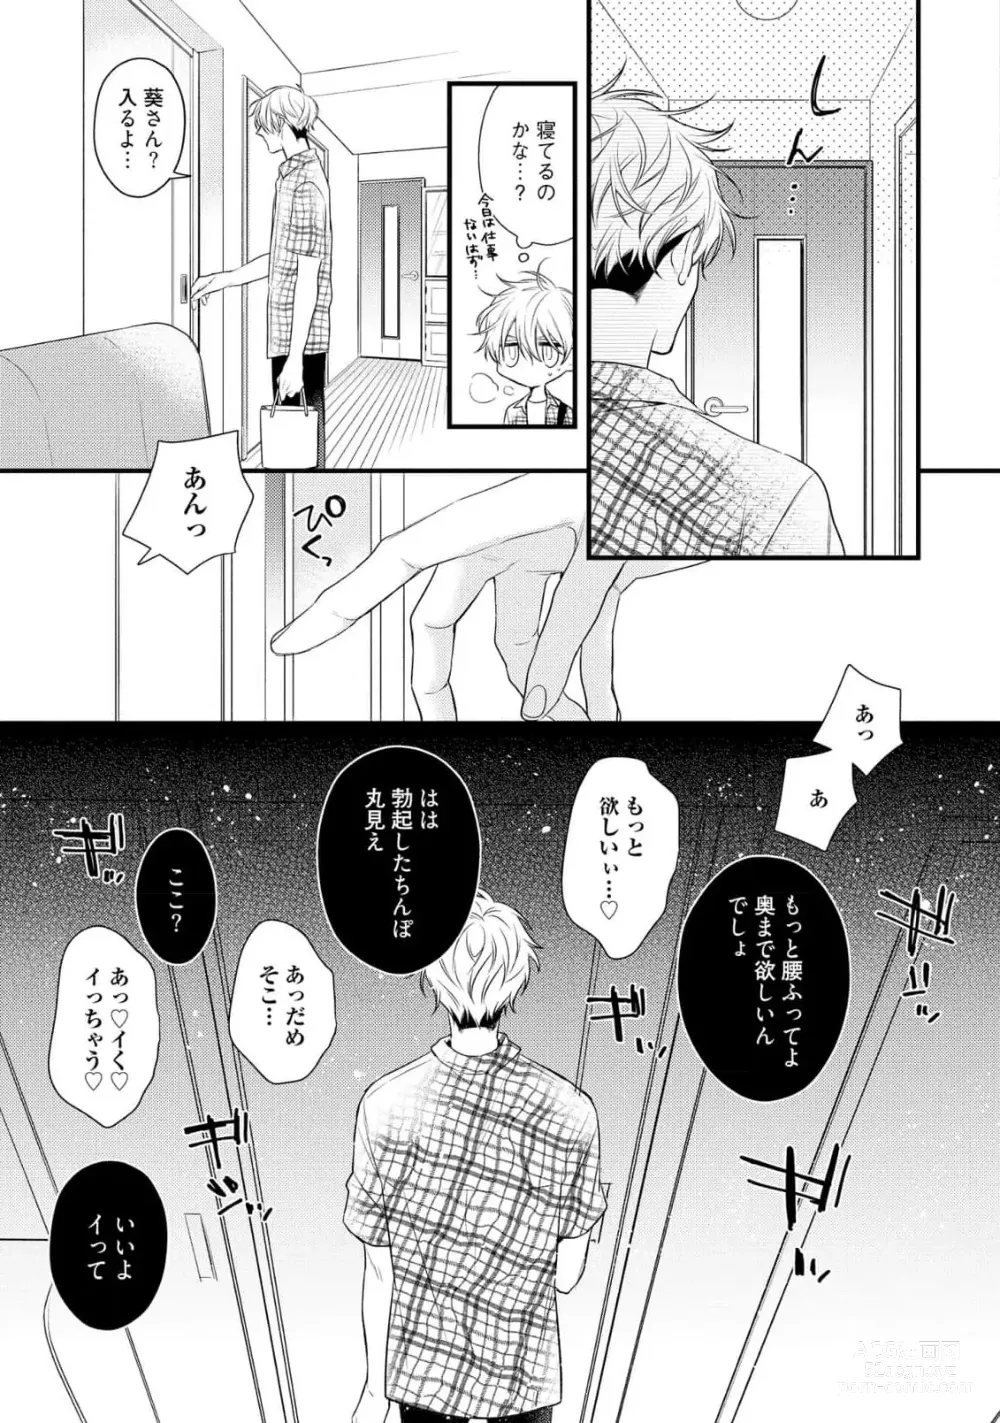 Page 185 of manga Ecchi wa shuu 7 Kibou Desu!